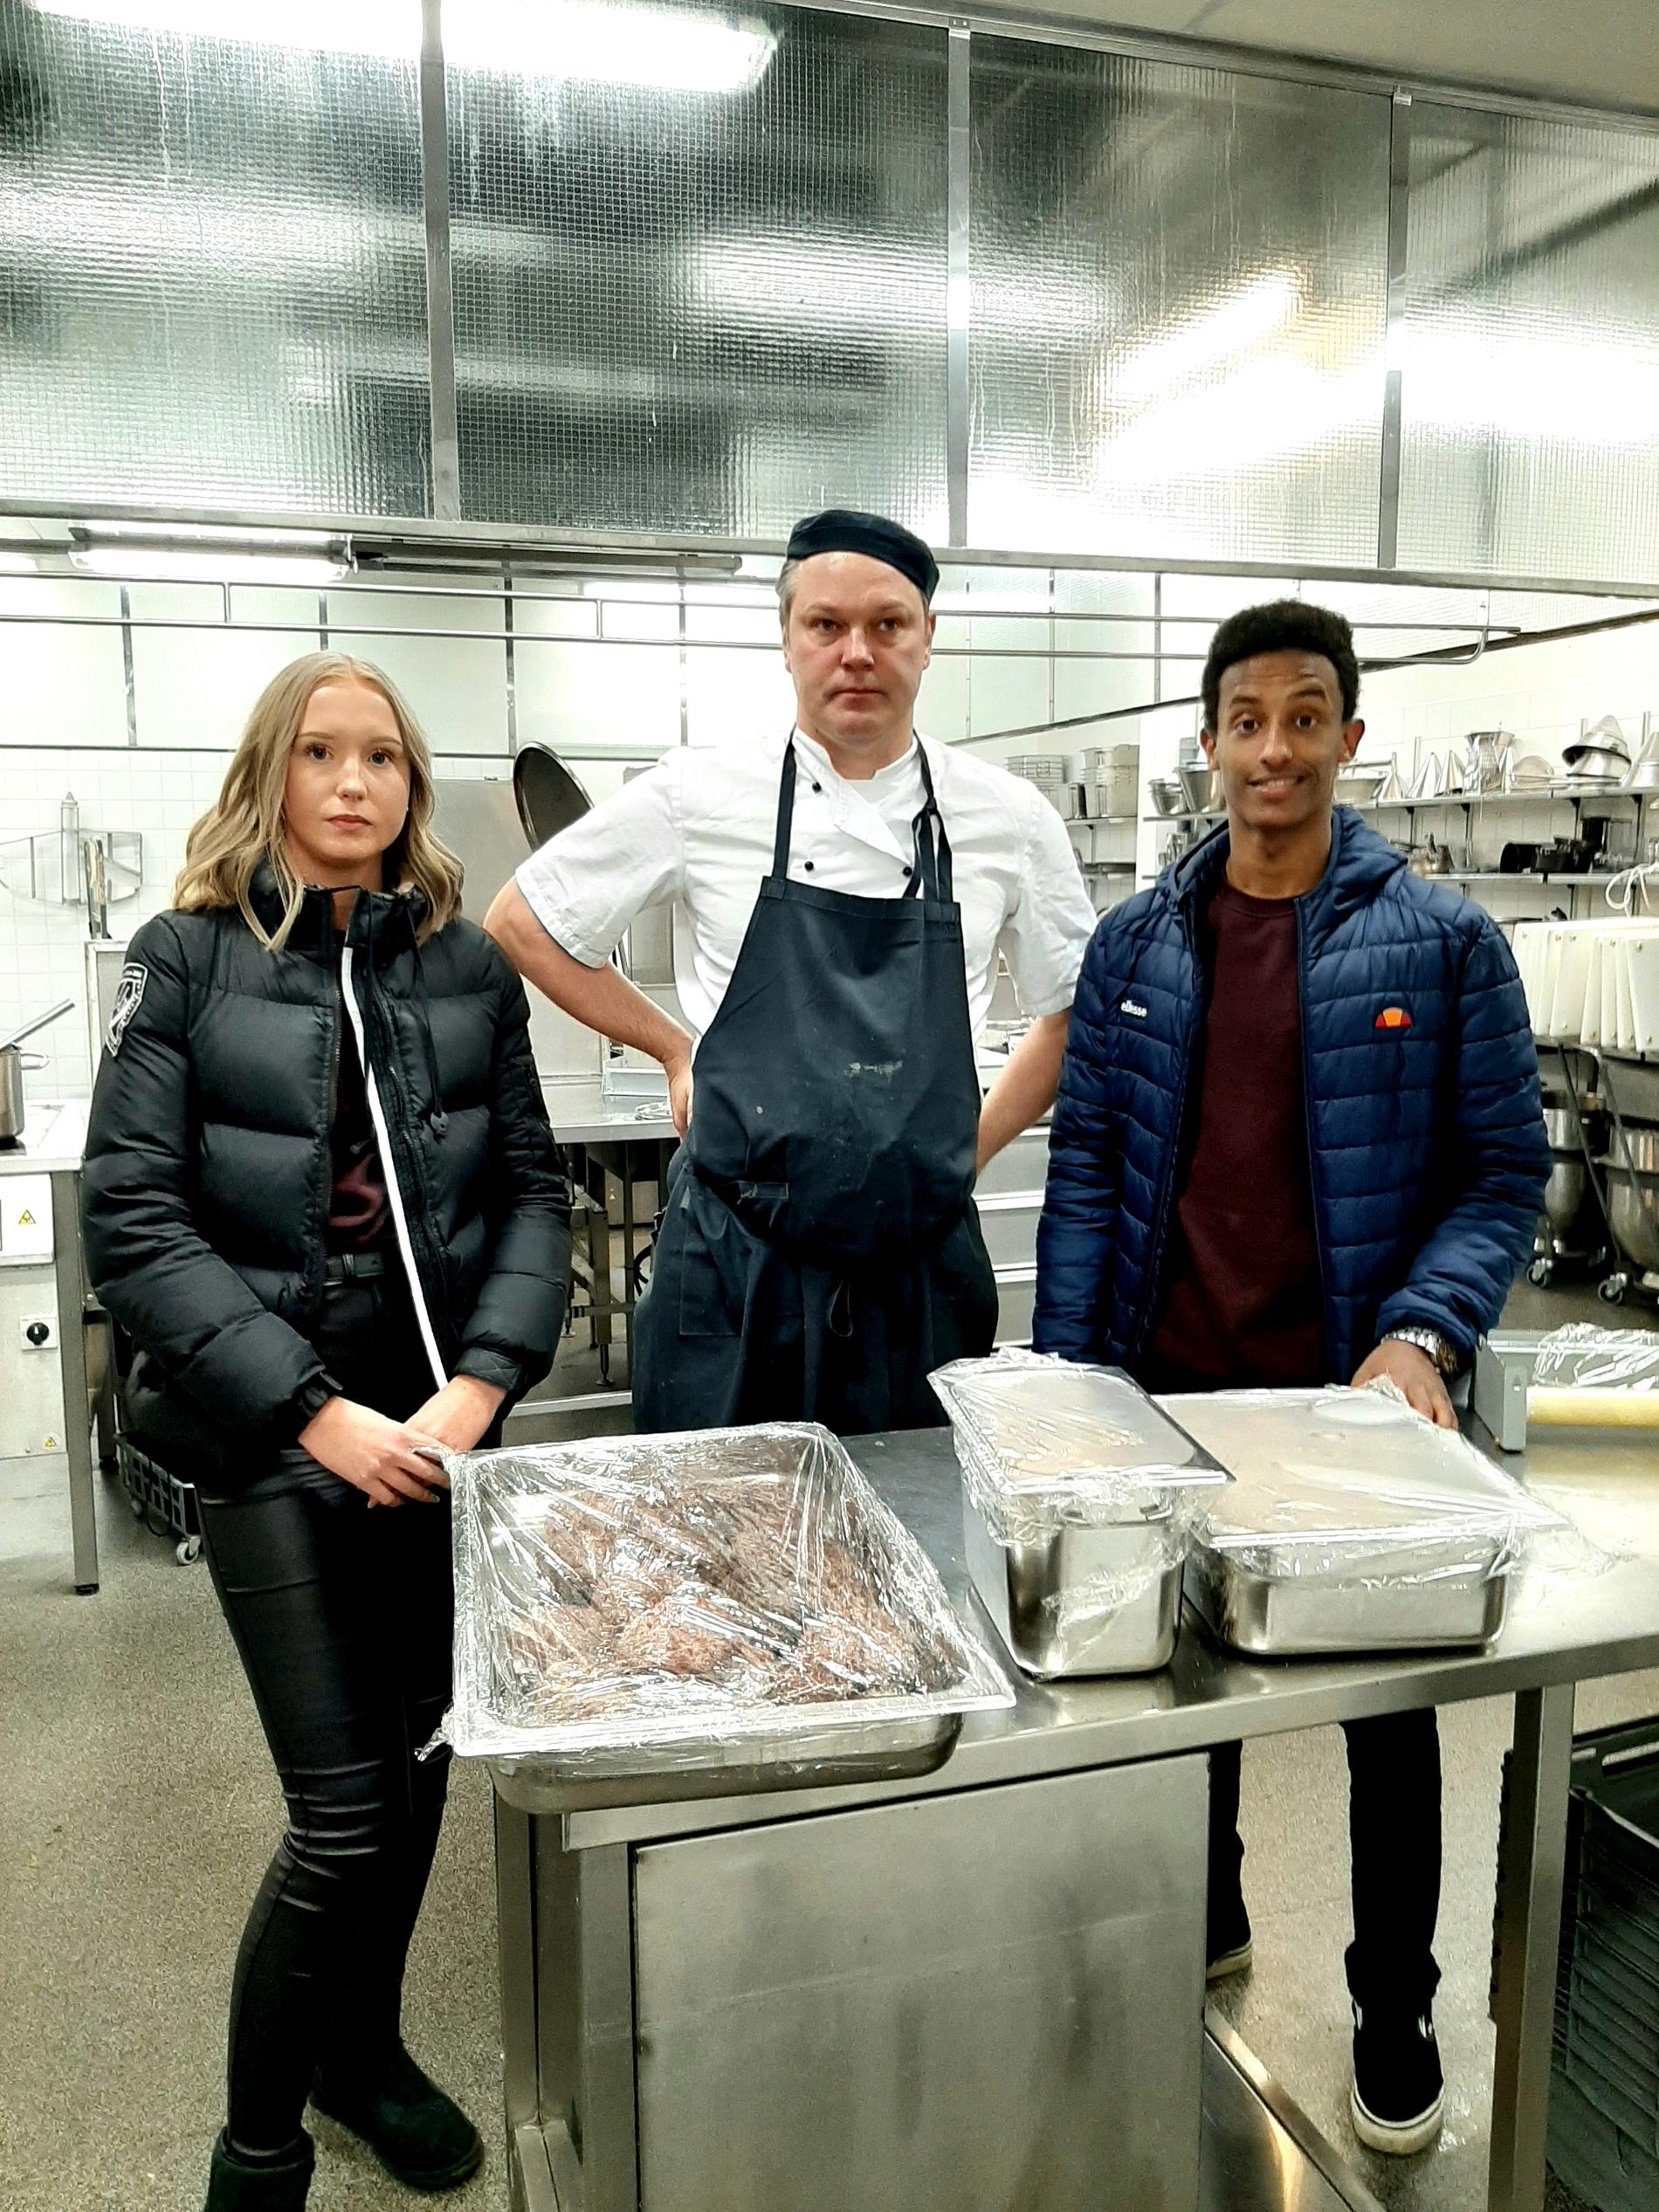 Alva, Mio och Evenezer tillsammans med Fredrik som är kock på Aros Congress Center.